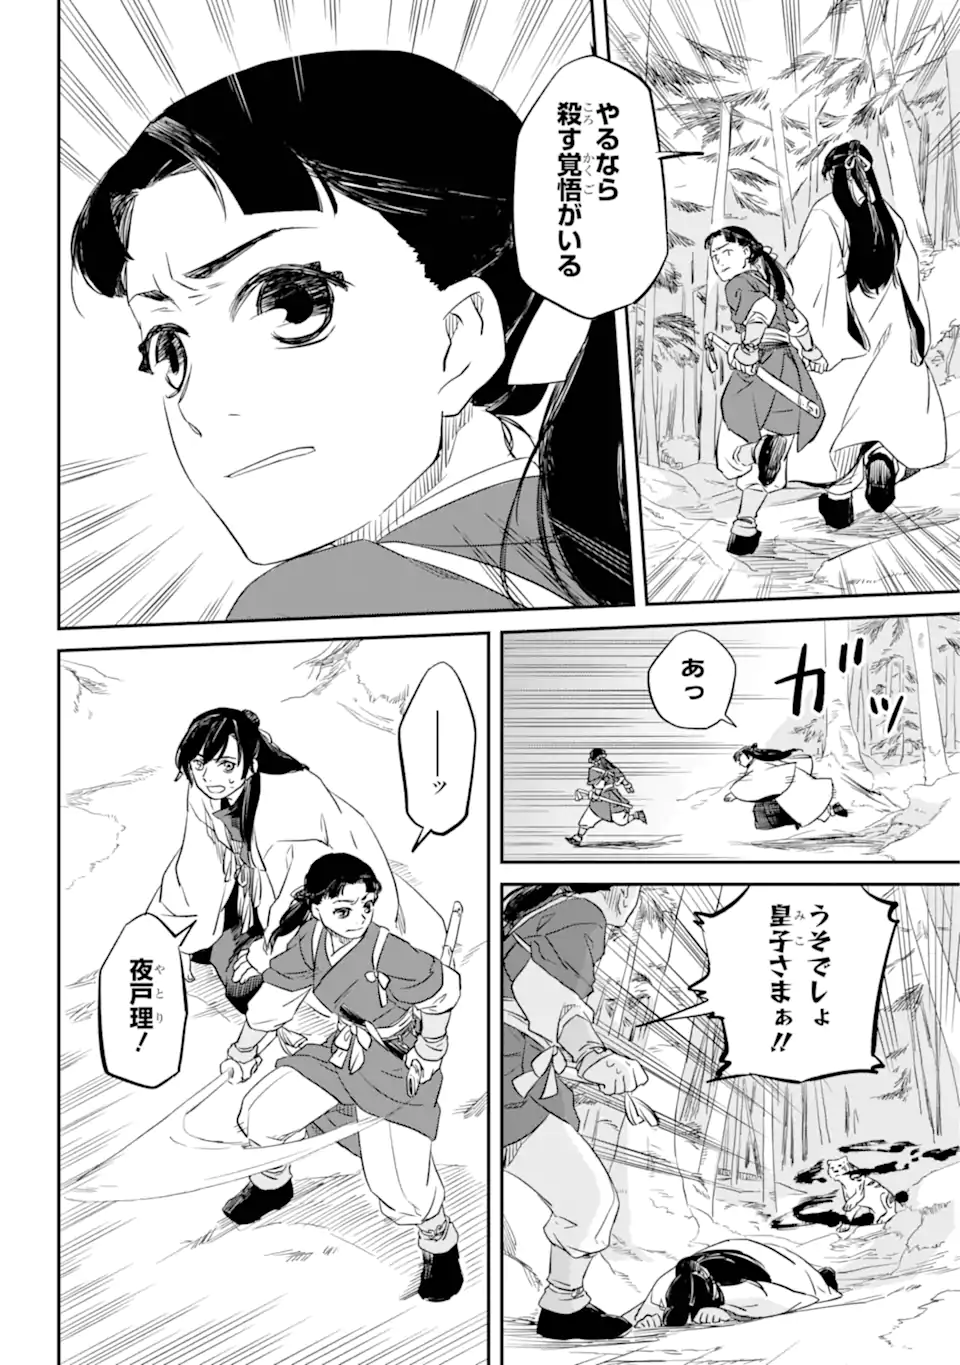 Ryuujin no Musume - Chapter 1.3 - Page 3